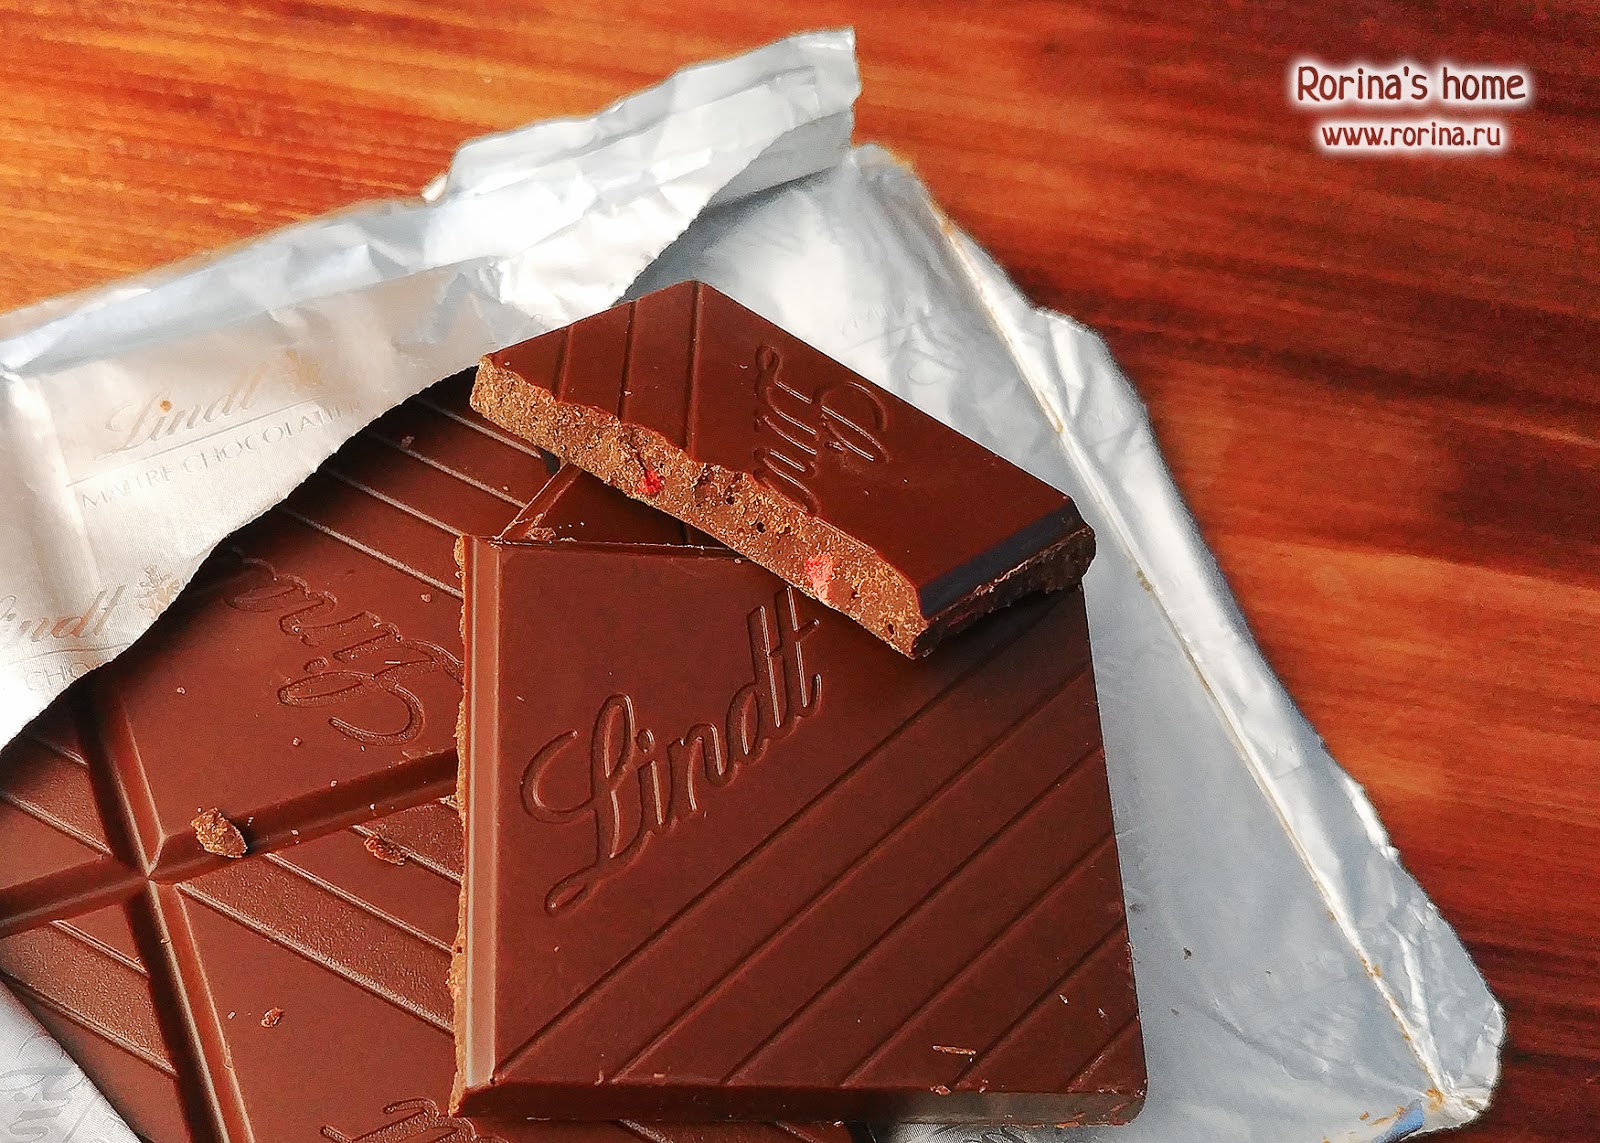 Шоколад Lindt Excellence с клубникой: отзыв и впечатления.